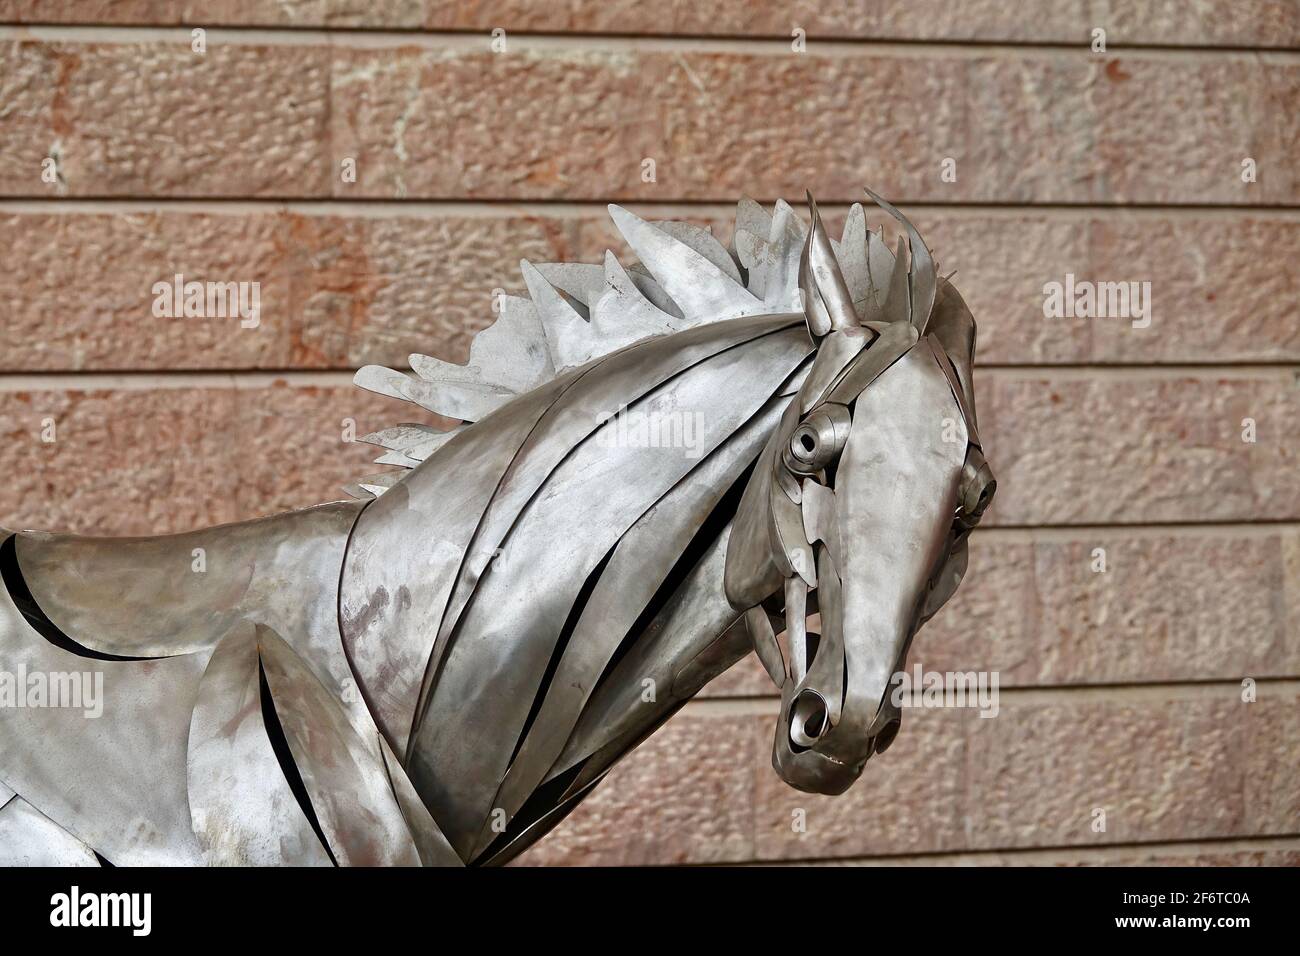 Dardo (caballo de metal de tamaño natural), obra del escultor granadino José Miguel Pino, exhibida en la sala del Moneo en Jaén (España) Foto de stock